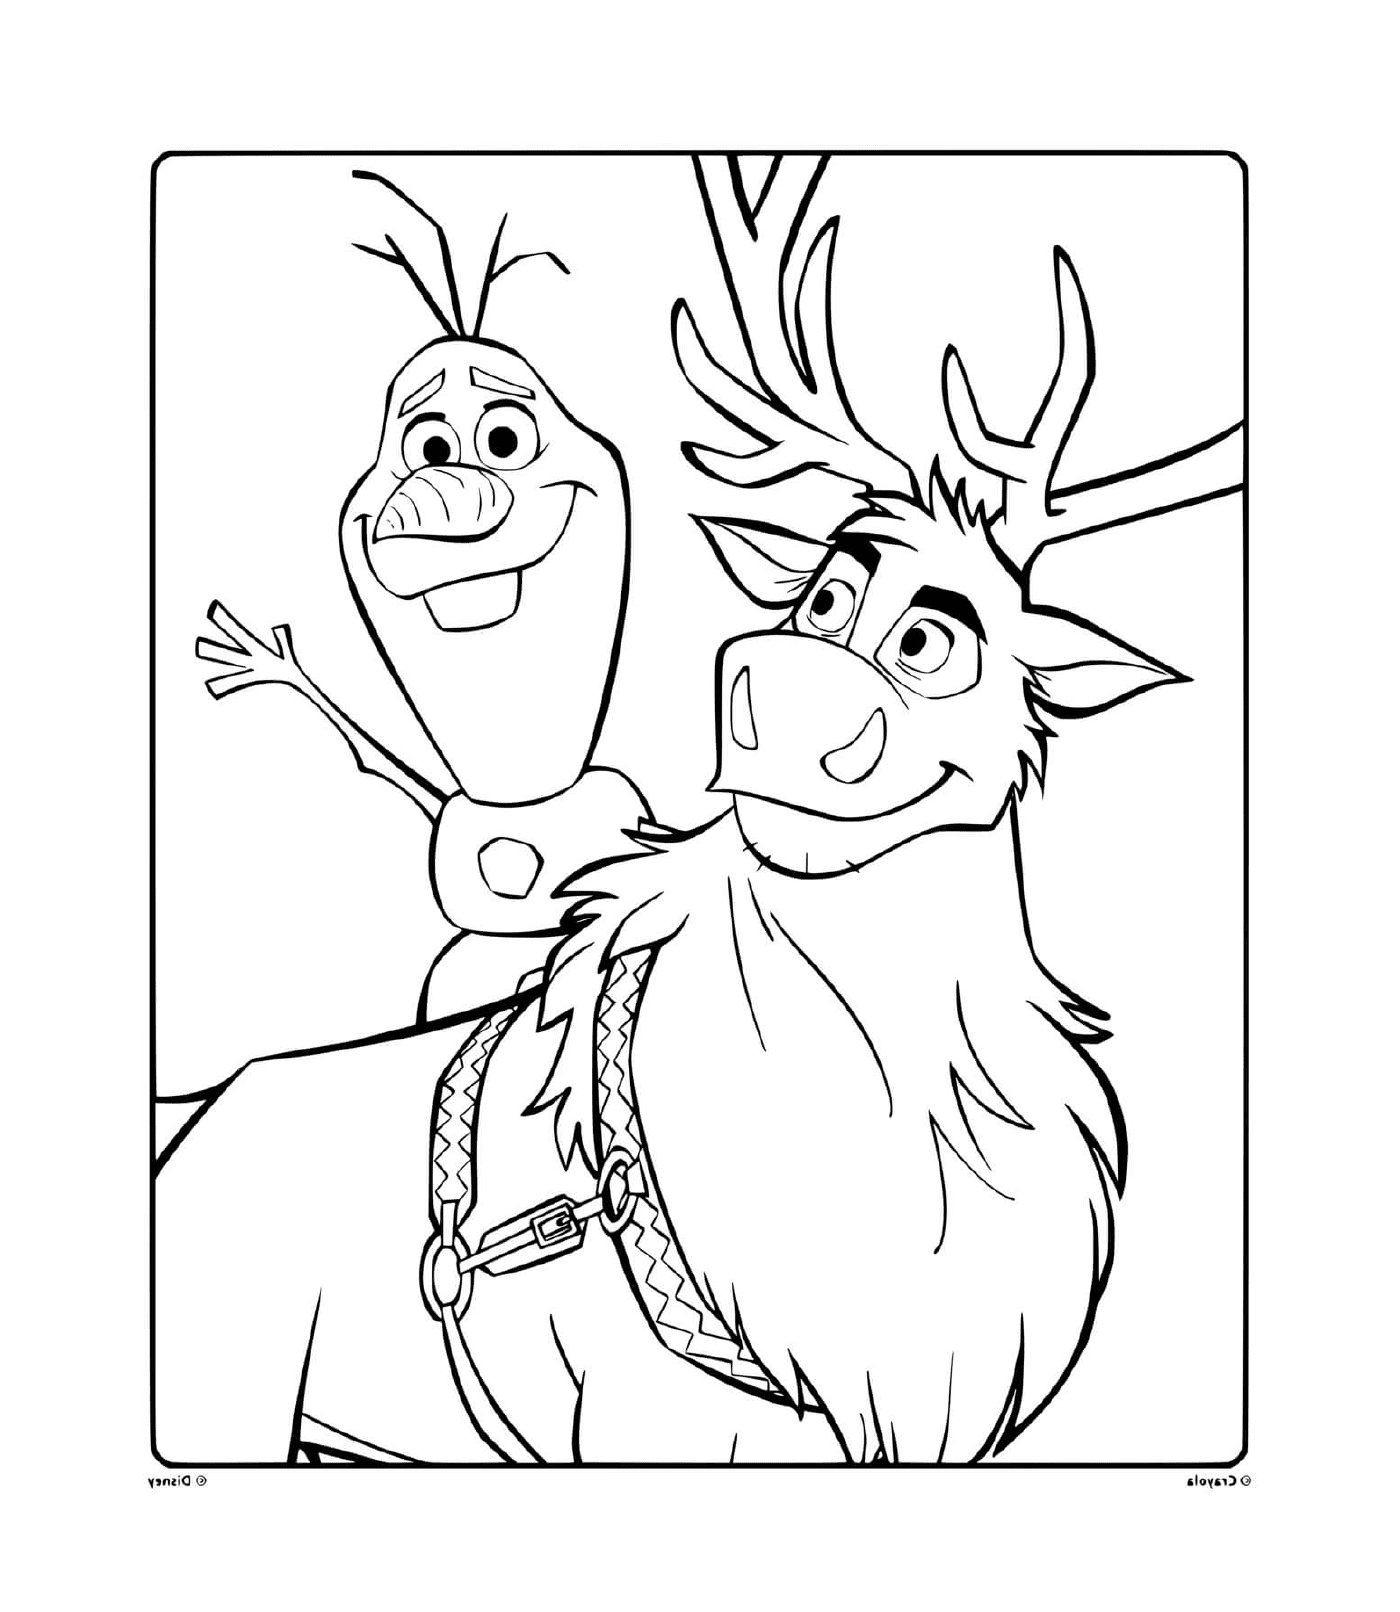  Olaf y Sven, compañeros 